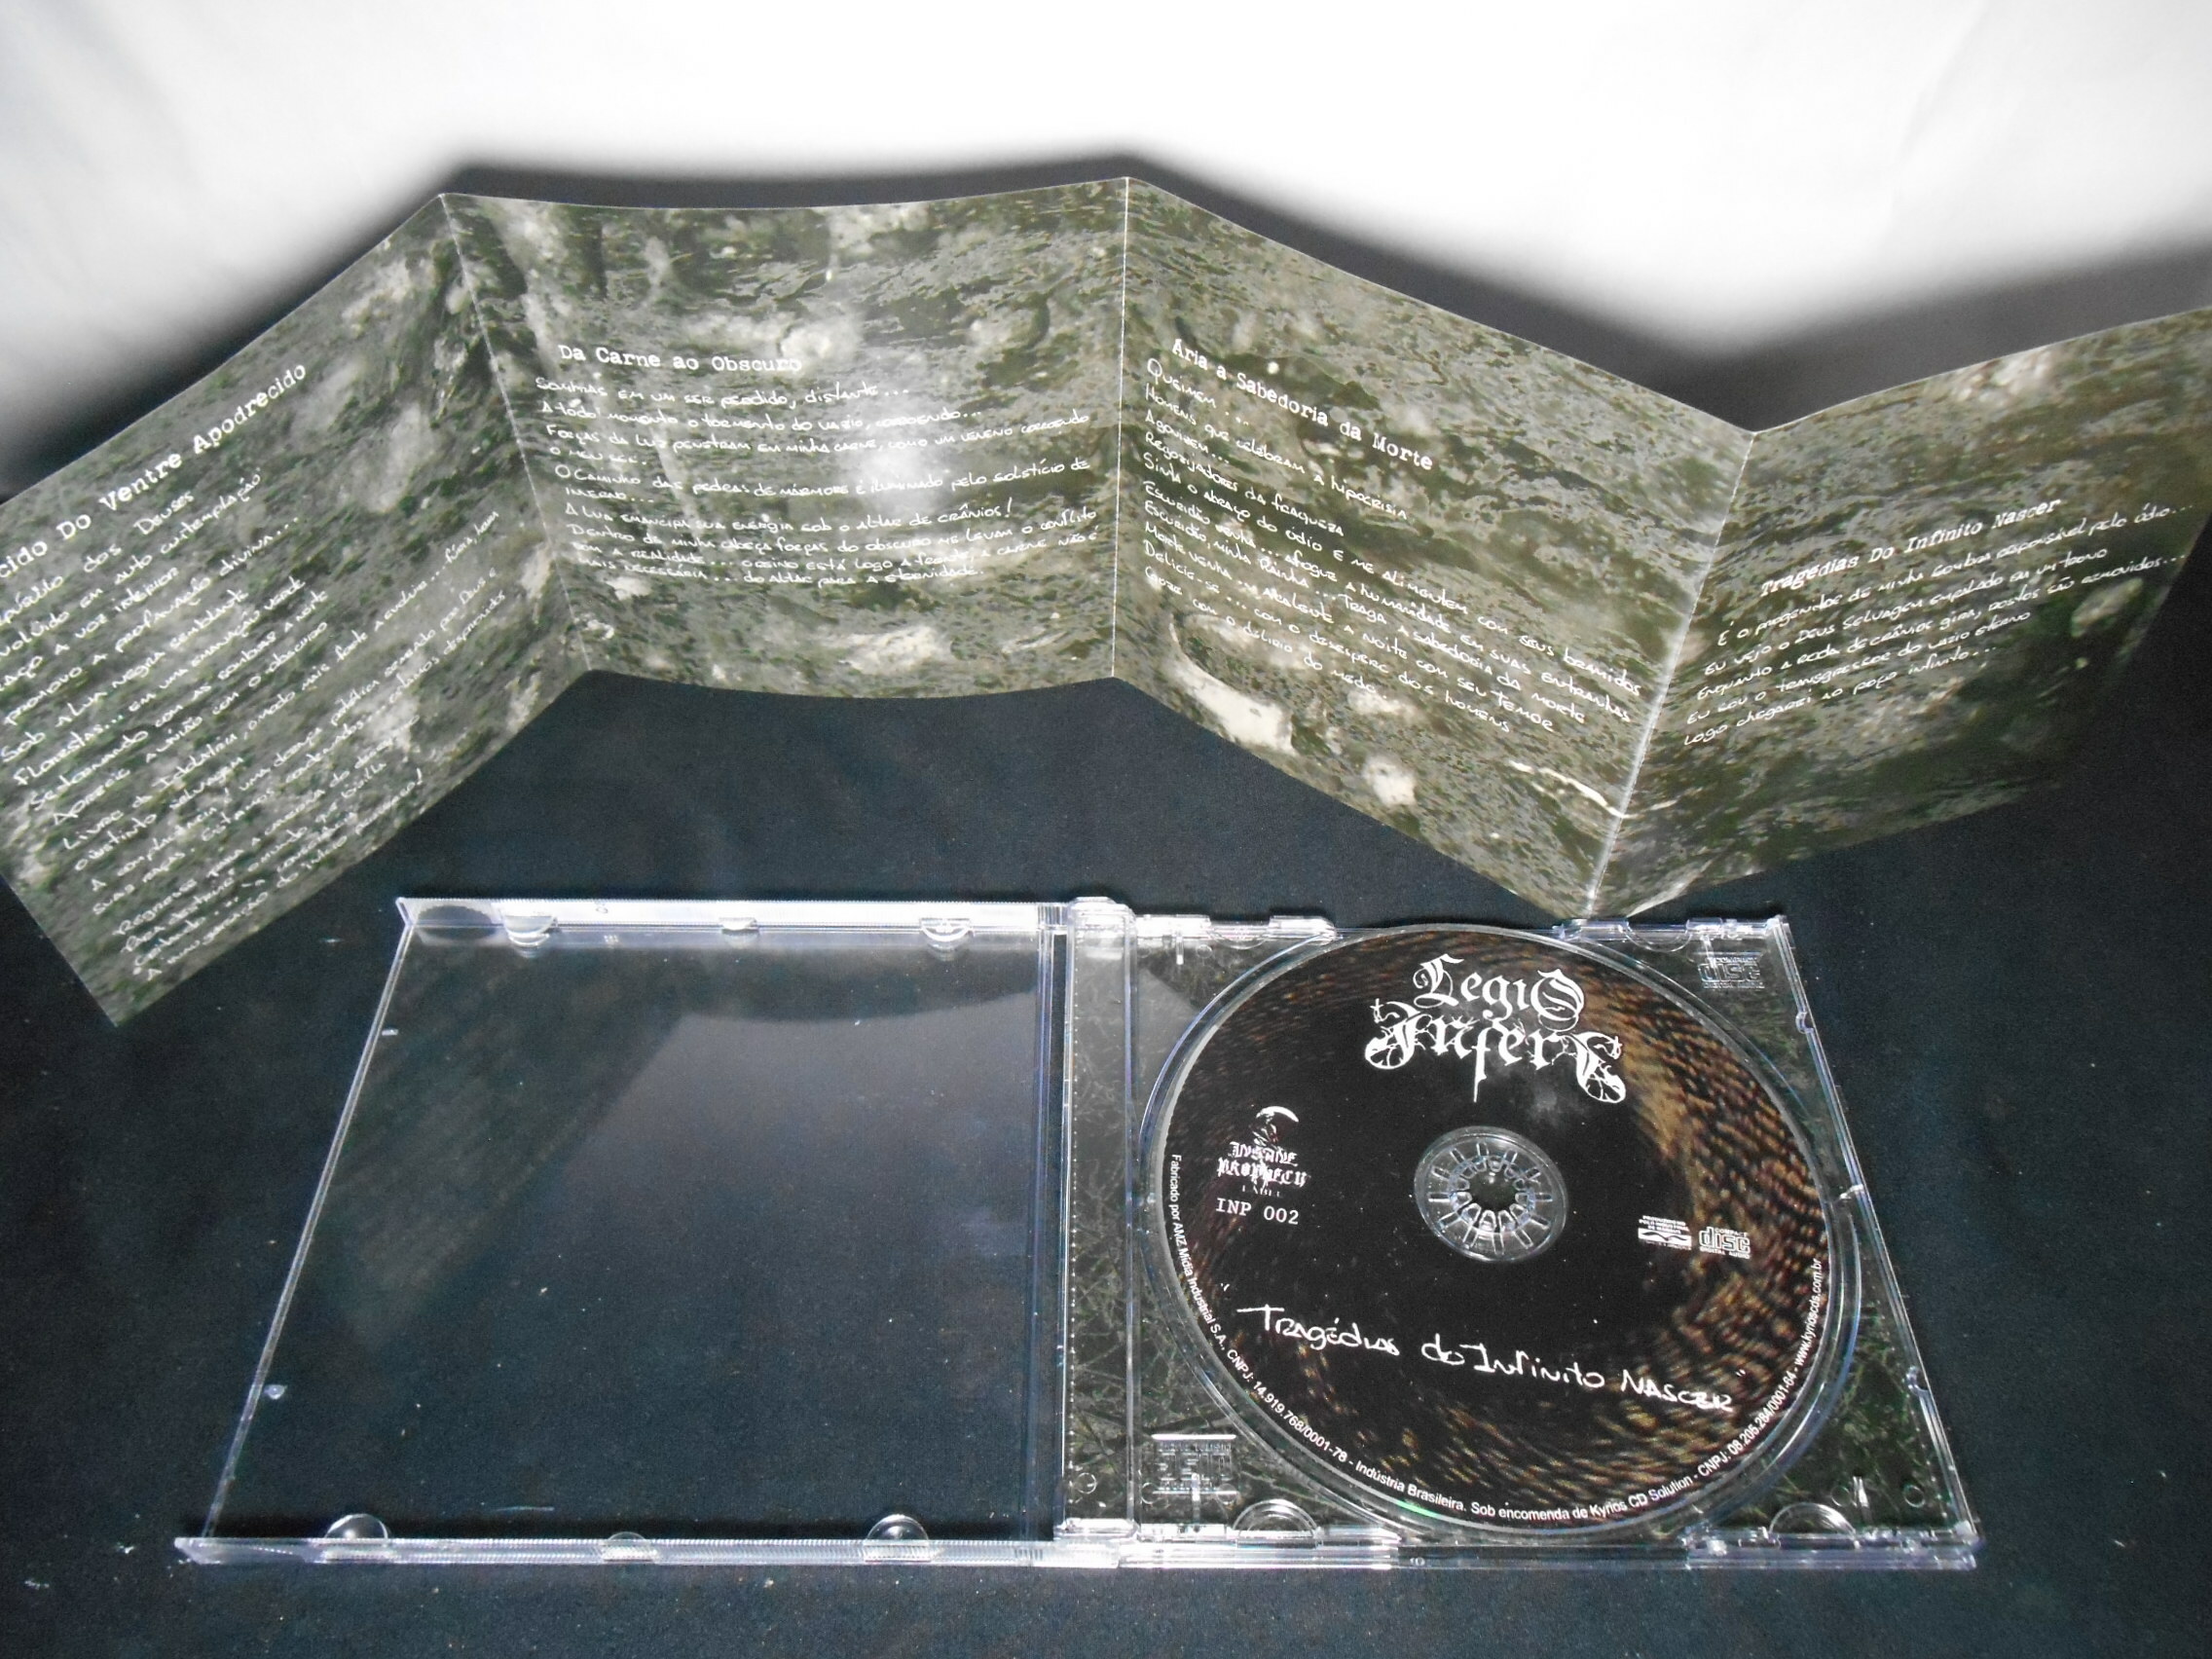 CD - Legio Inferi - Tragédias do Infinito Nascer